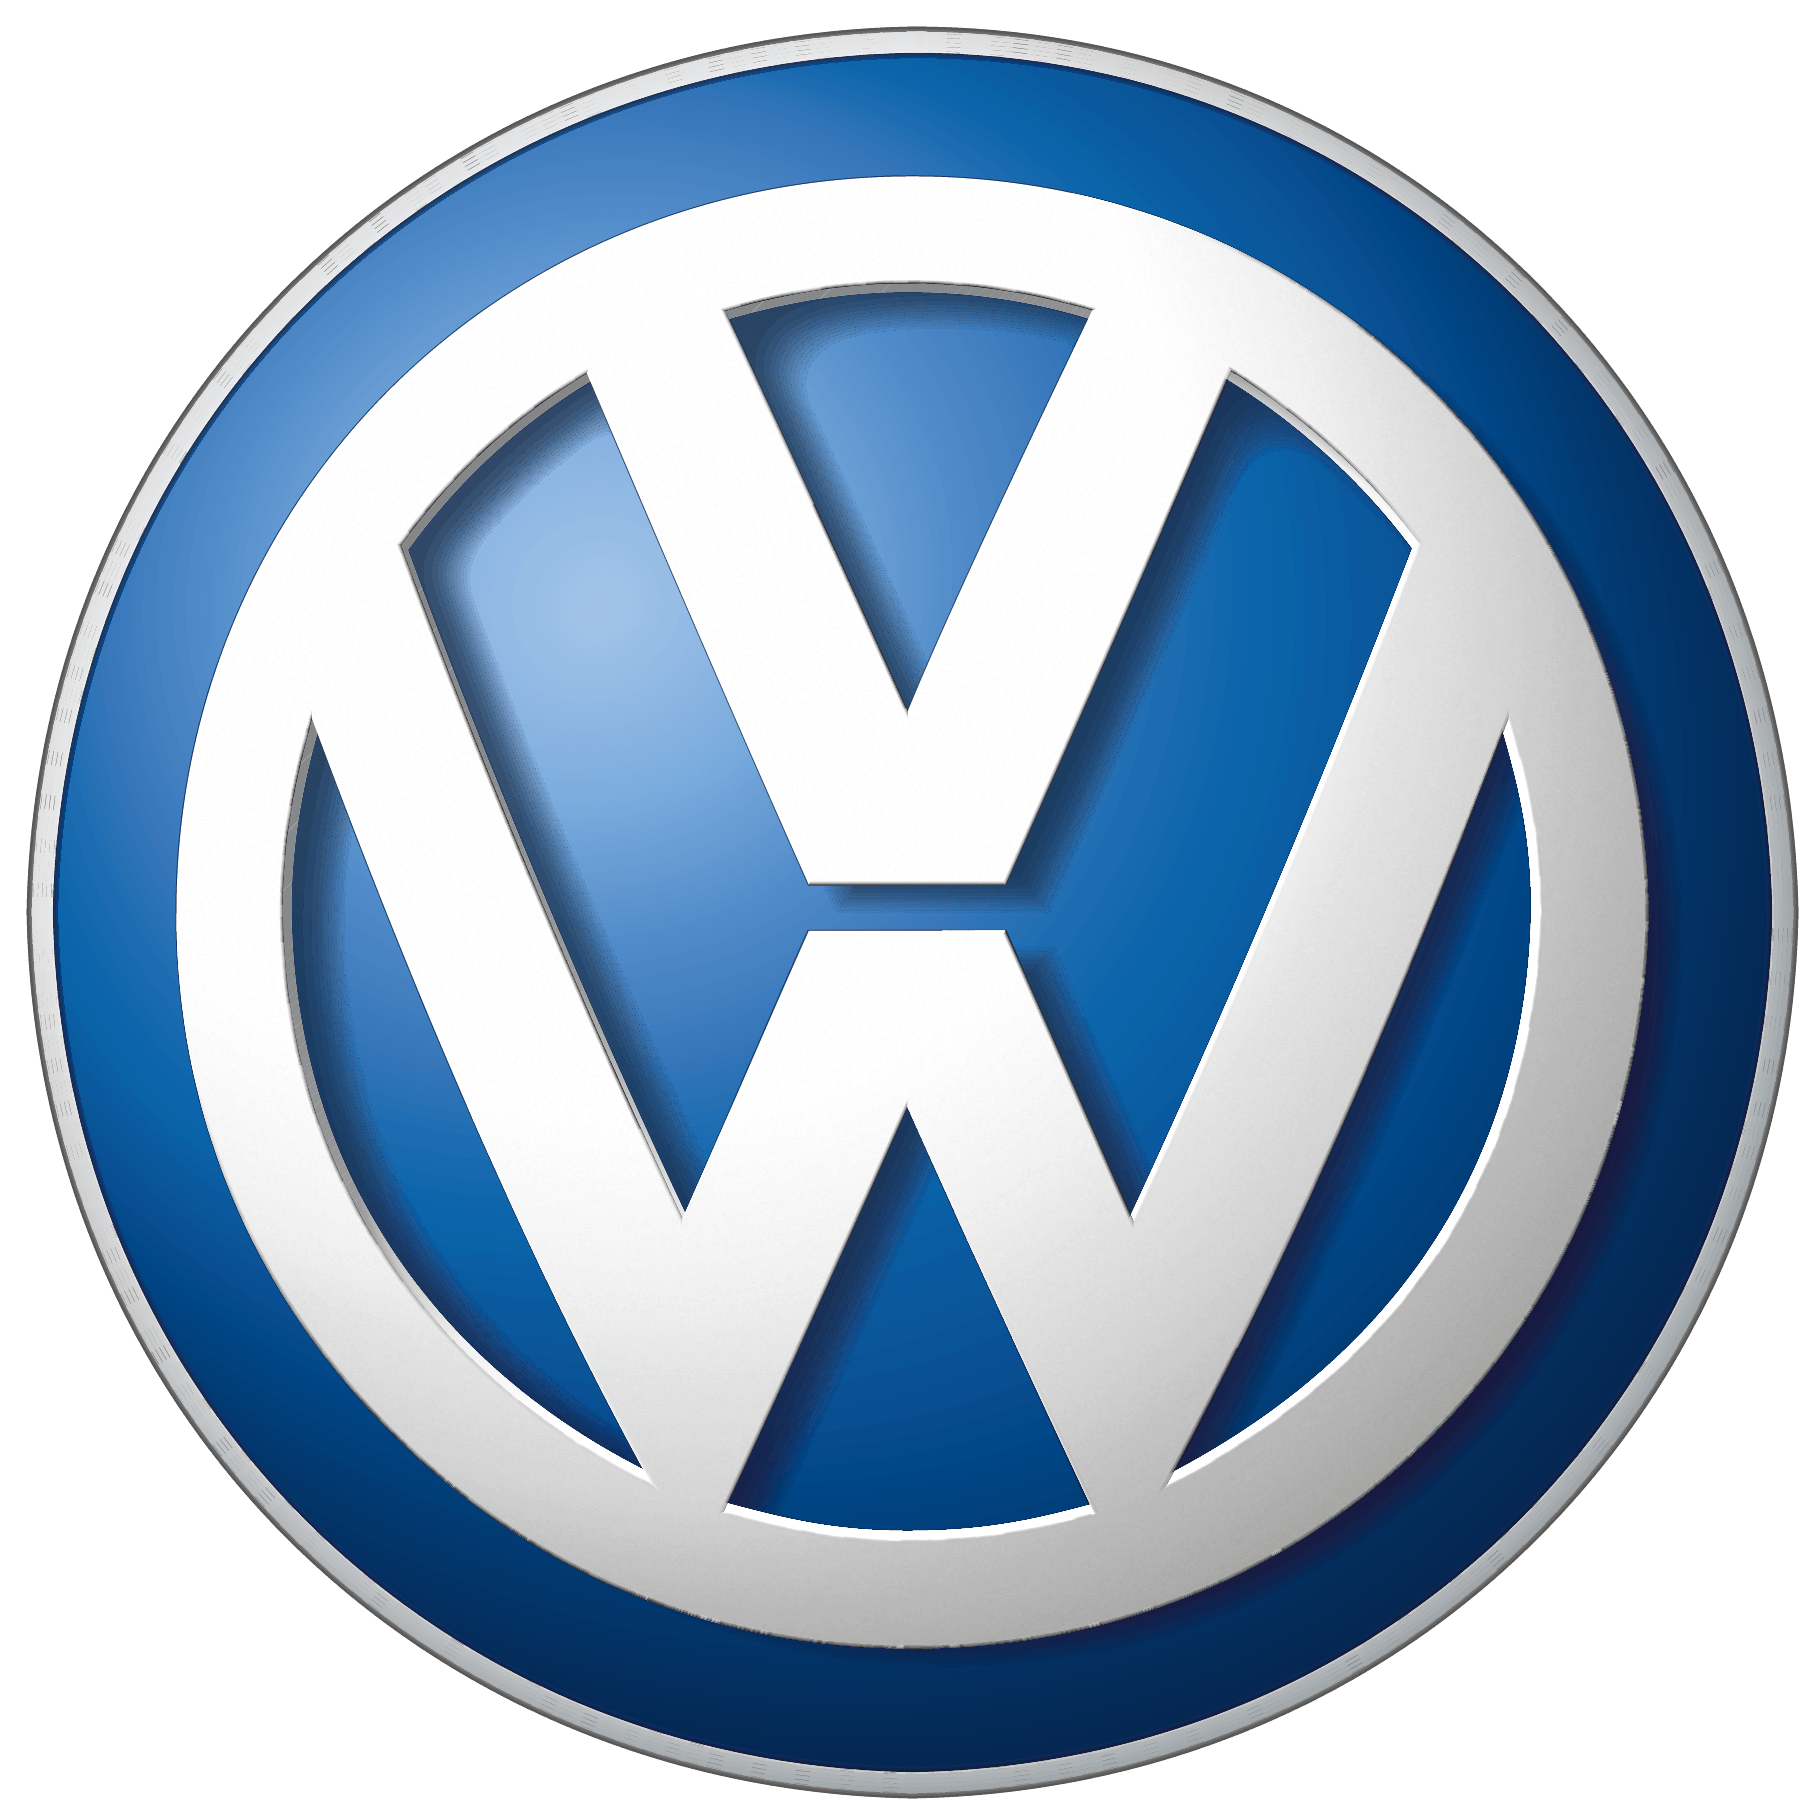 Volkswagen Car Logo Png Brand Image PNG Image